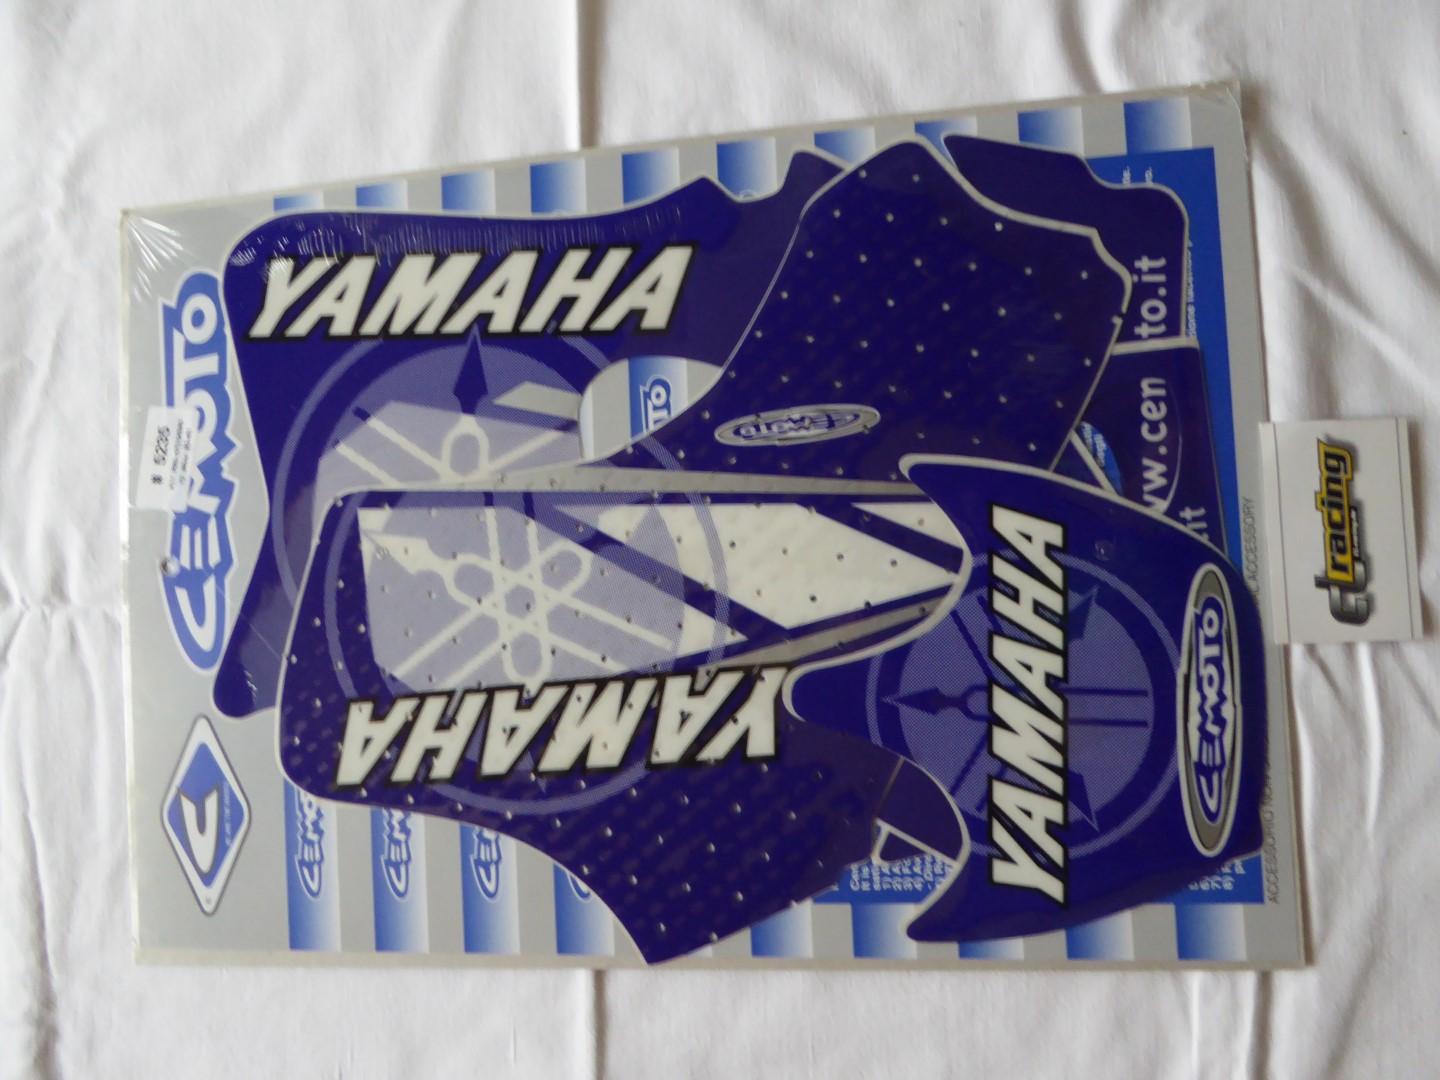 Dekorsatz Aufkleber Sticker Verkleidung graphic kit für Yamaha Yz 80 93-01